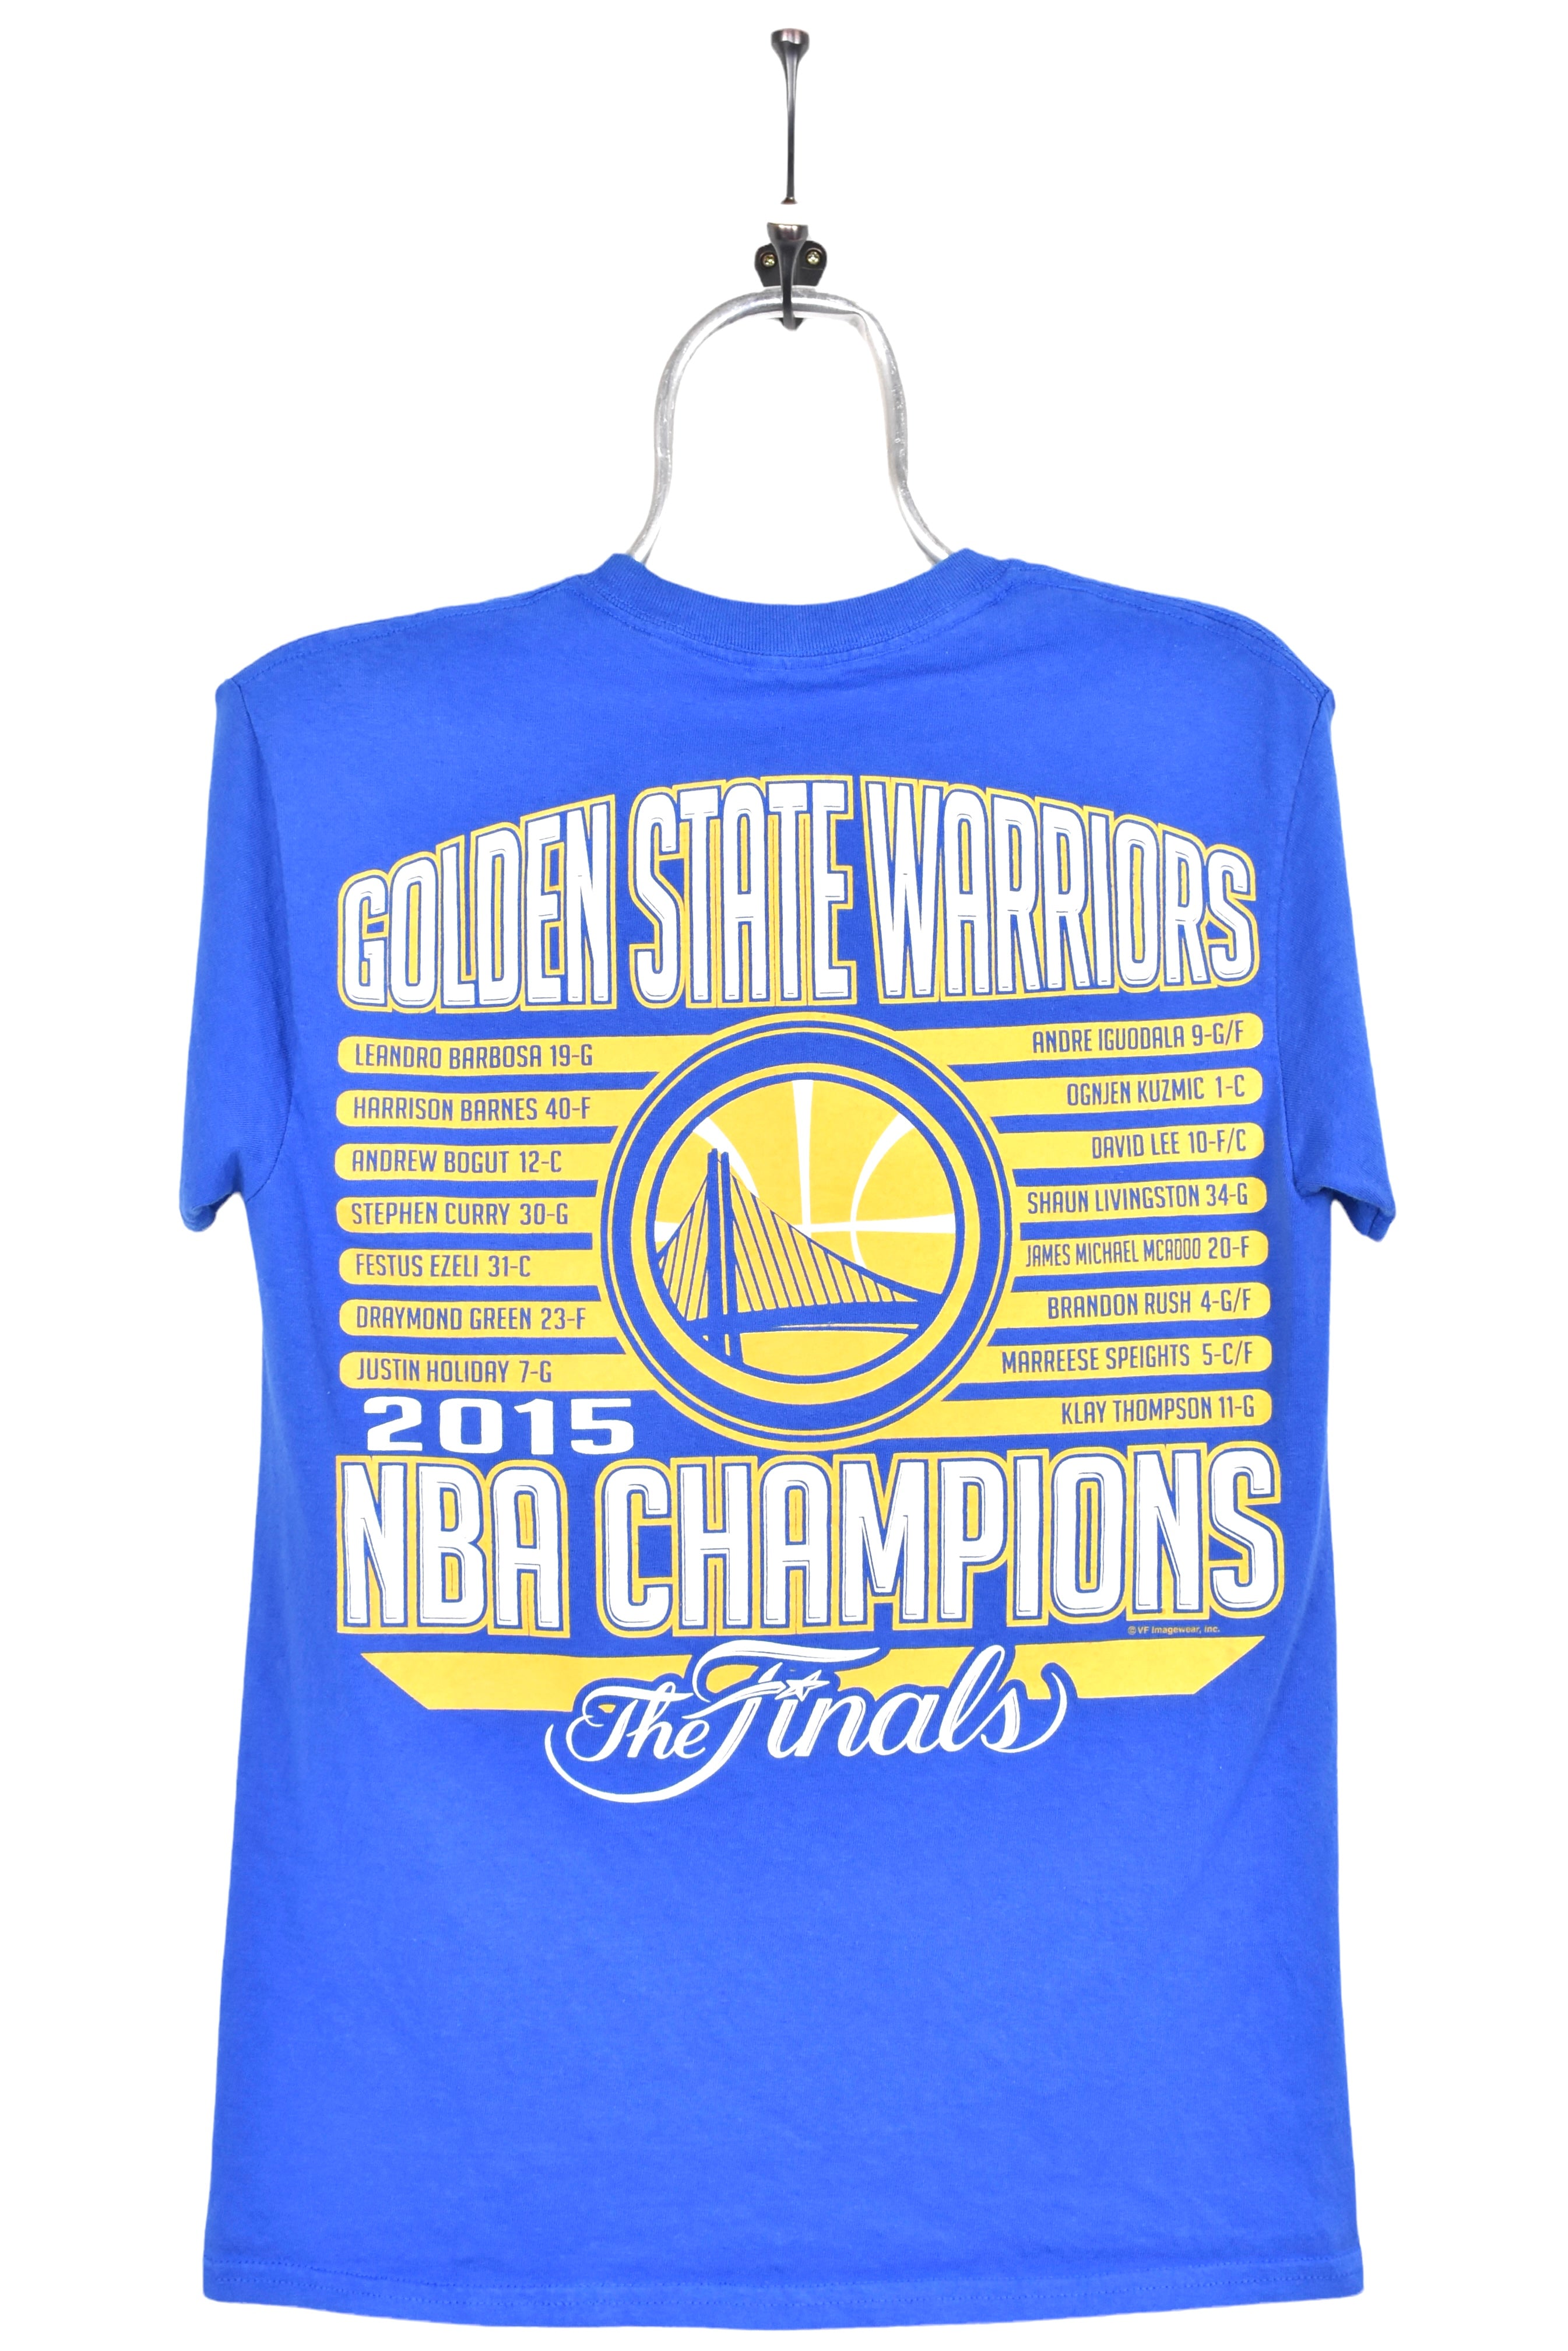 Women's modern Golden State Warriors shirt, 2015 blue graphic tee - AU Small PRO SPORT